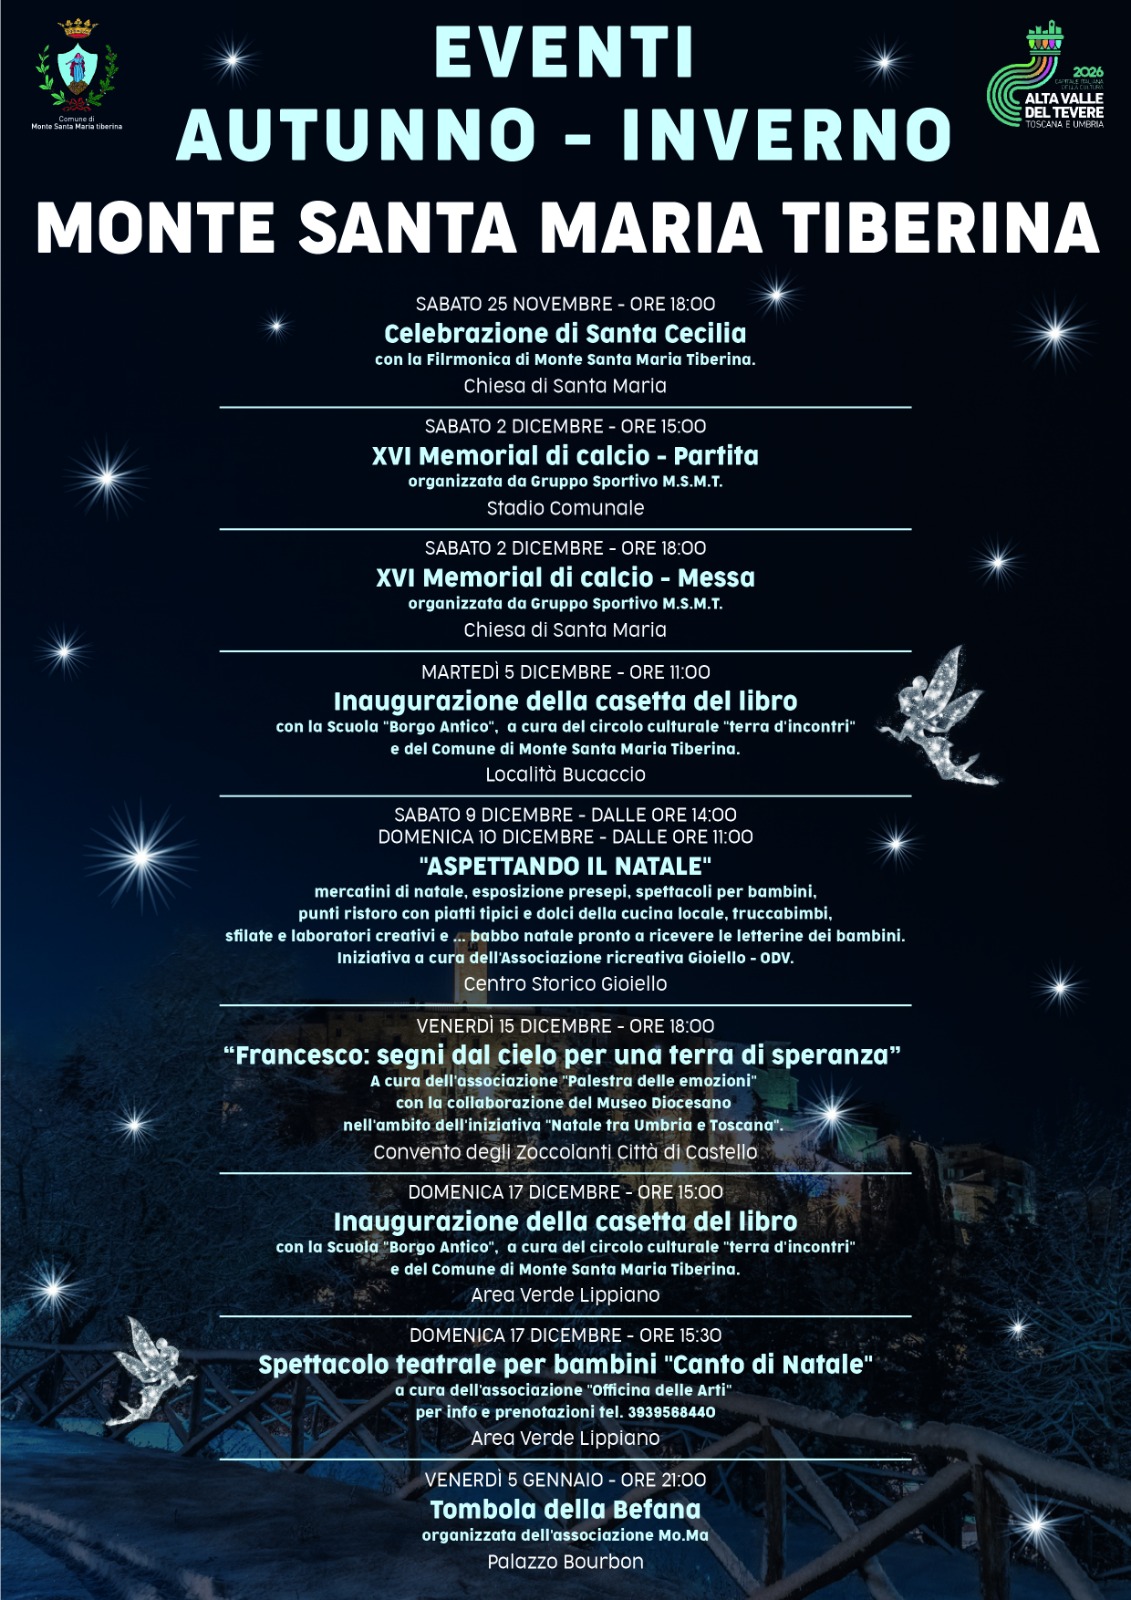 Verso il Natale – La magia delle feste a Monte Santa Maria Tiberina 